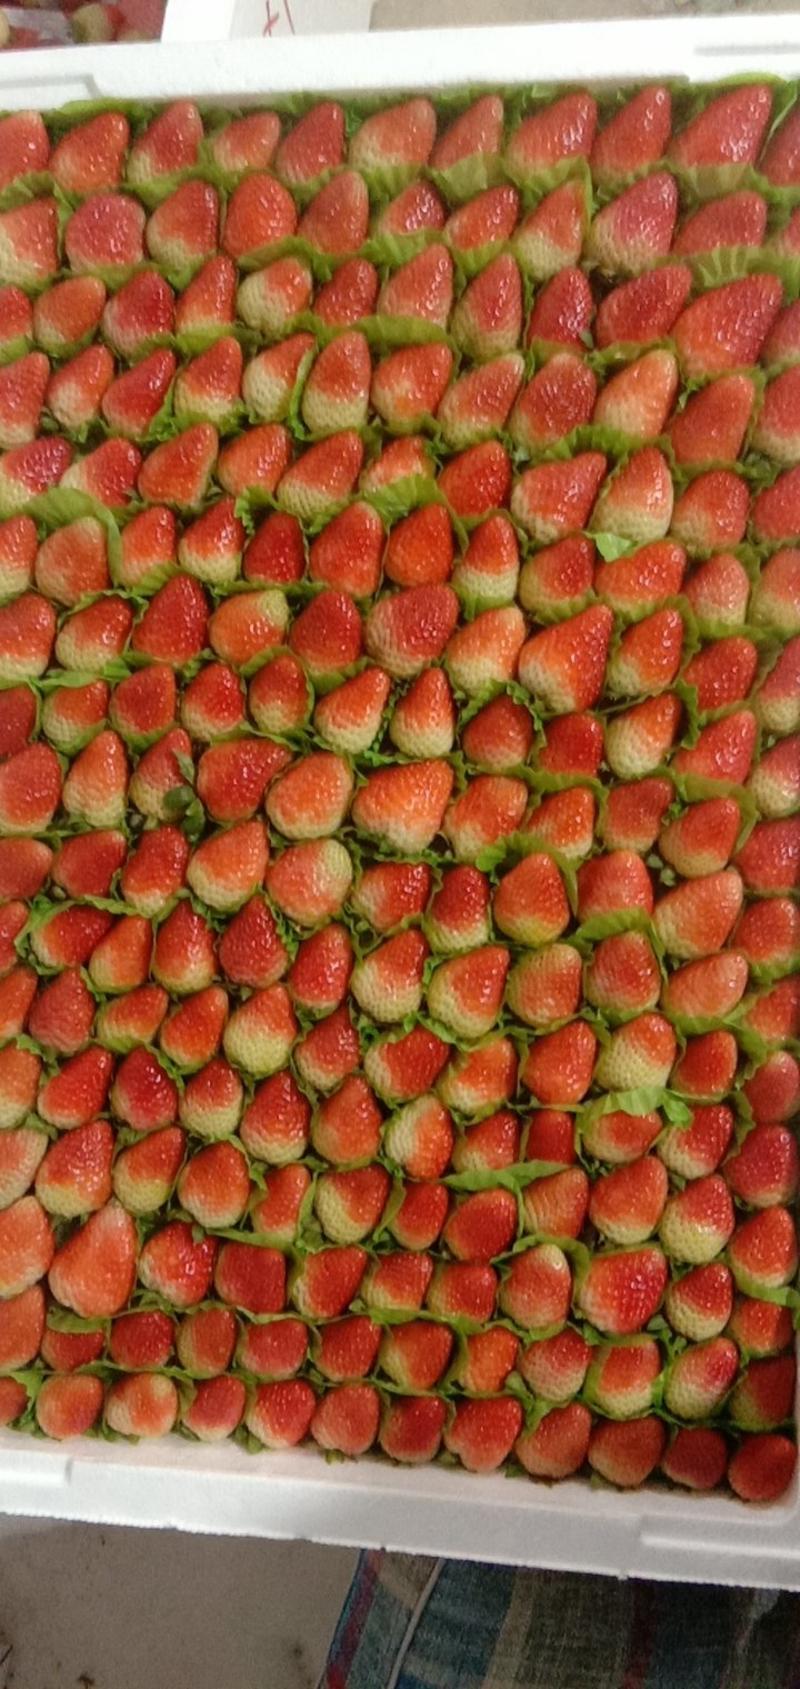 四季草莓，种植在高原地区，品质杠杠的。